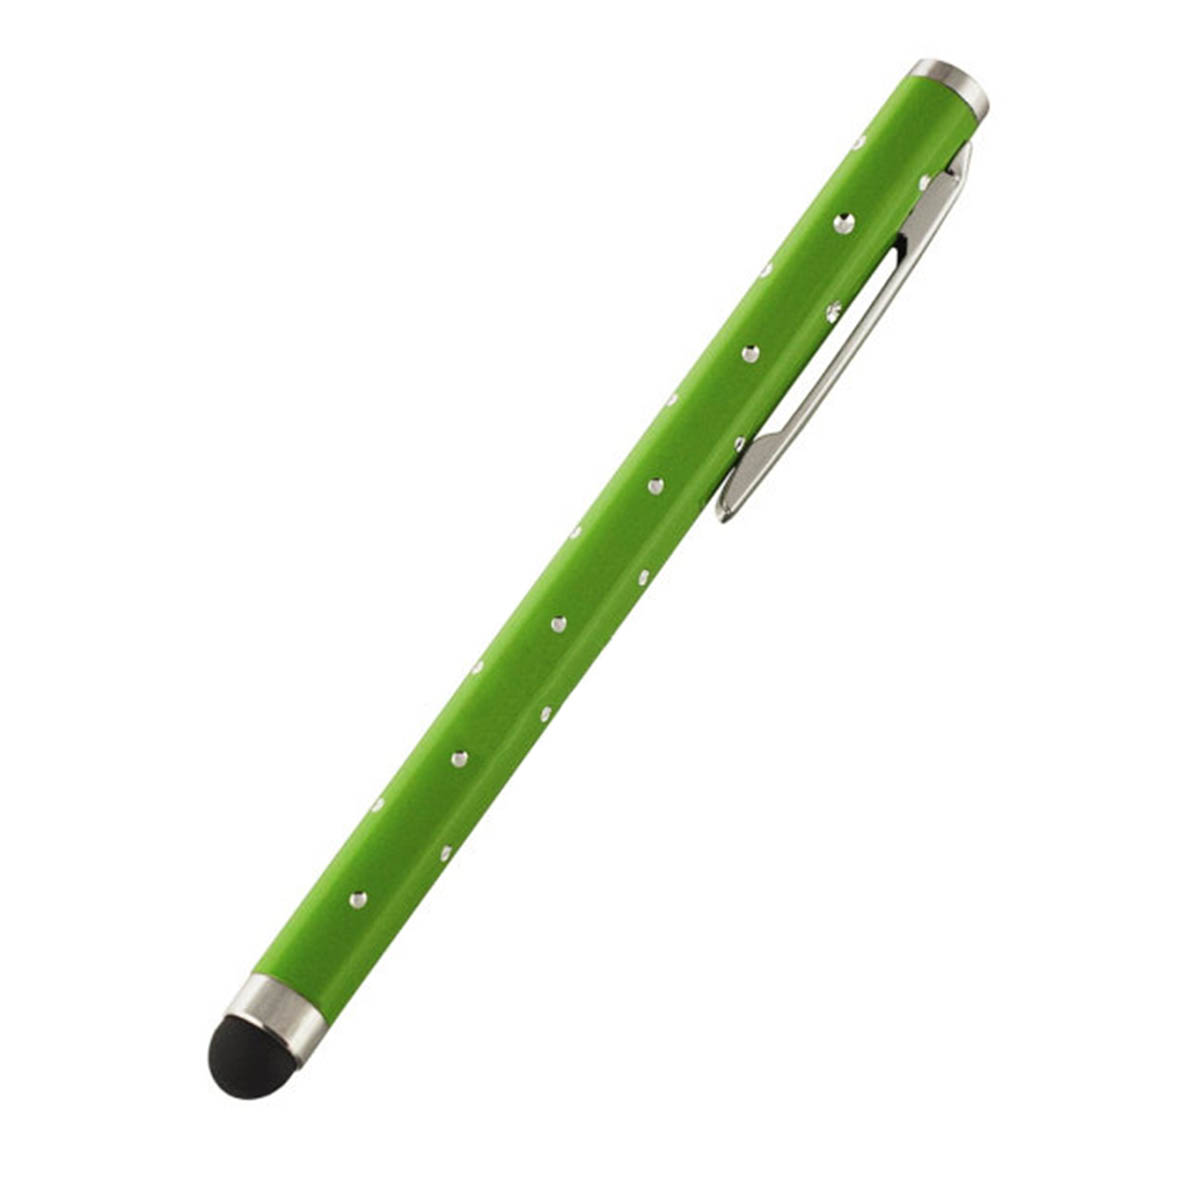 Стилус емкостной для смартфонов и планшетных ПК, длина 8 см, со стразами, цвет зеленый